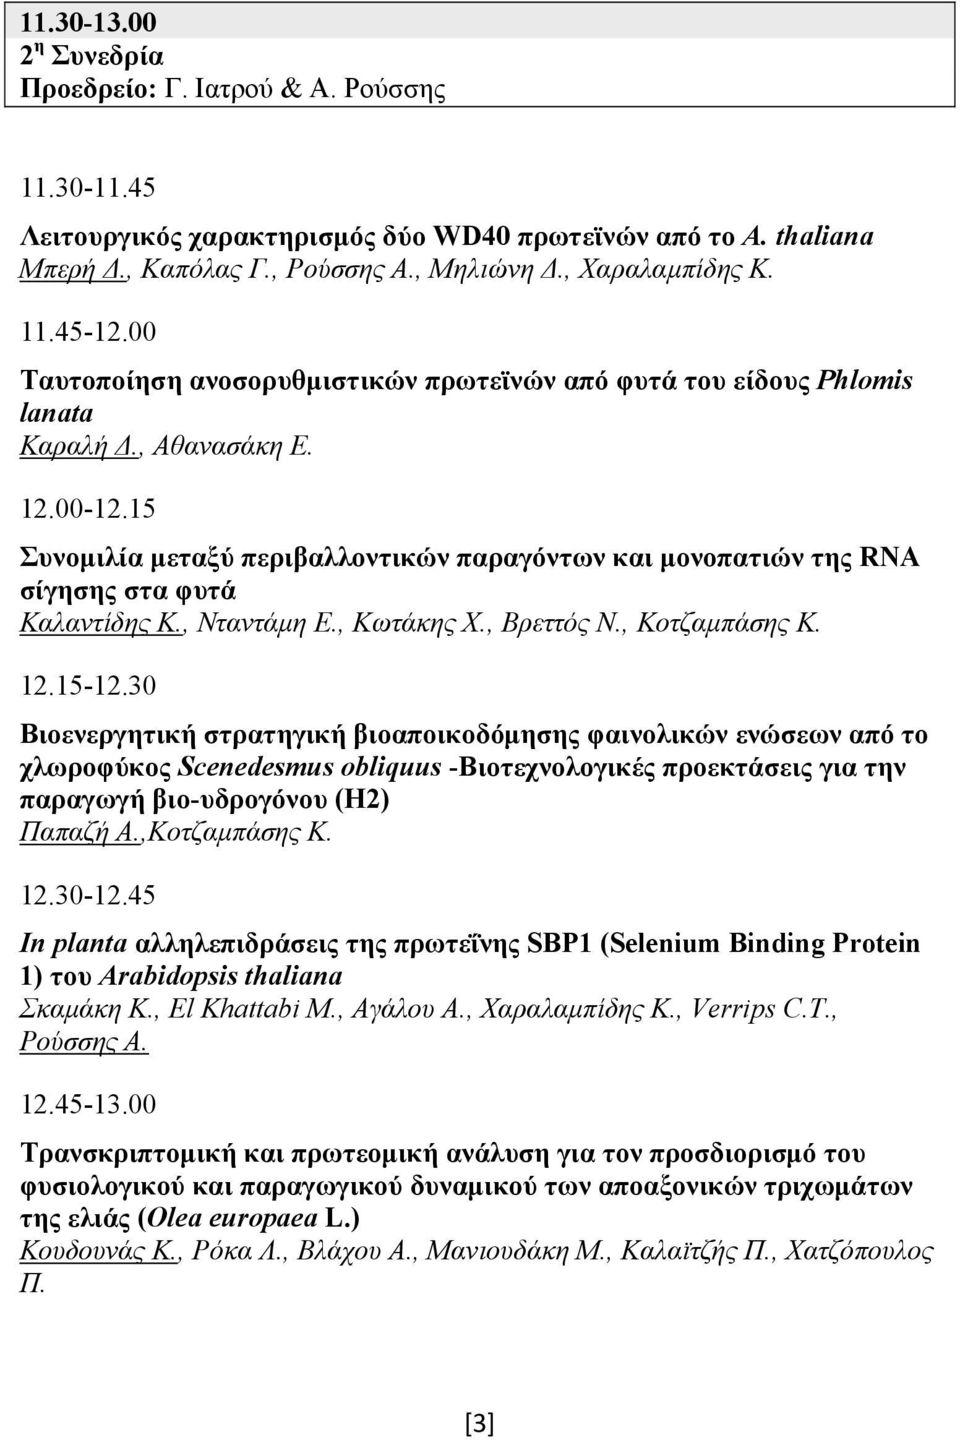 15 Συνομιλία μεταξύ περιβαλλοντικών παραγόντων και μονοπατιών της RNA σίγησης στα φυτά Καλαντίδης Κ., Νταντάμη Ε., Κωτάκης Χ., Βρεττός Ν., Κοτζαμπάσης Κ. 12.15-12.